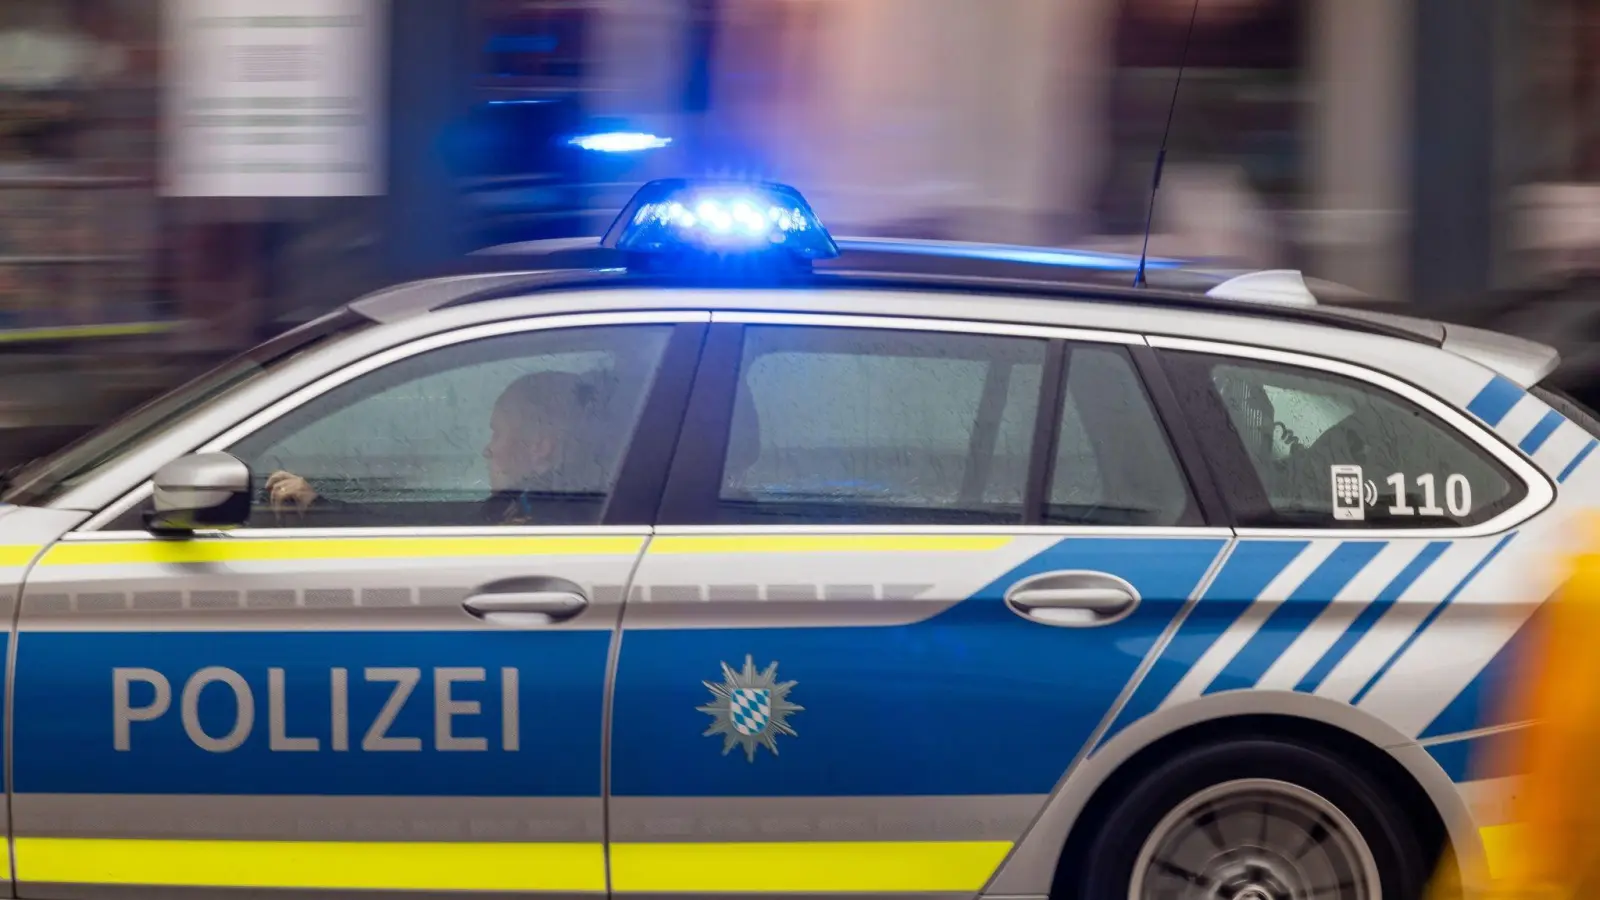 Die Polizei war in Bad Windsheim mit einer Auseinandersetzung beschäftigt, deren Auslöser ein lautes Telefonat war. (Symbolbild: Peter Kneffel/dpa)